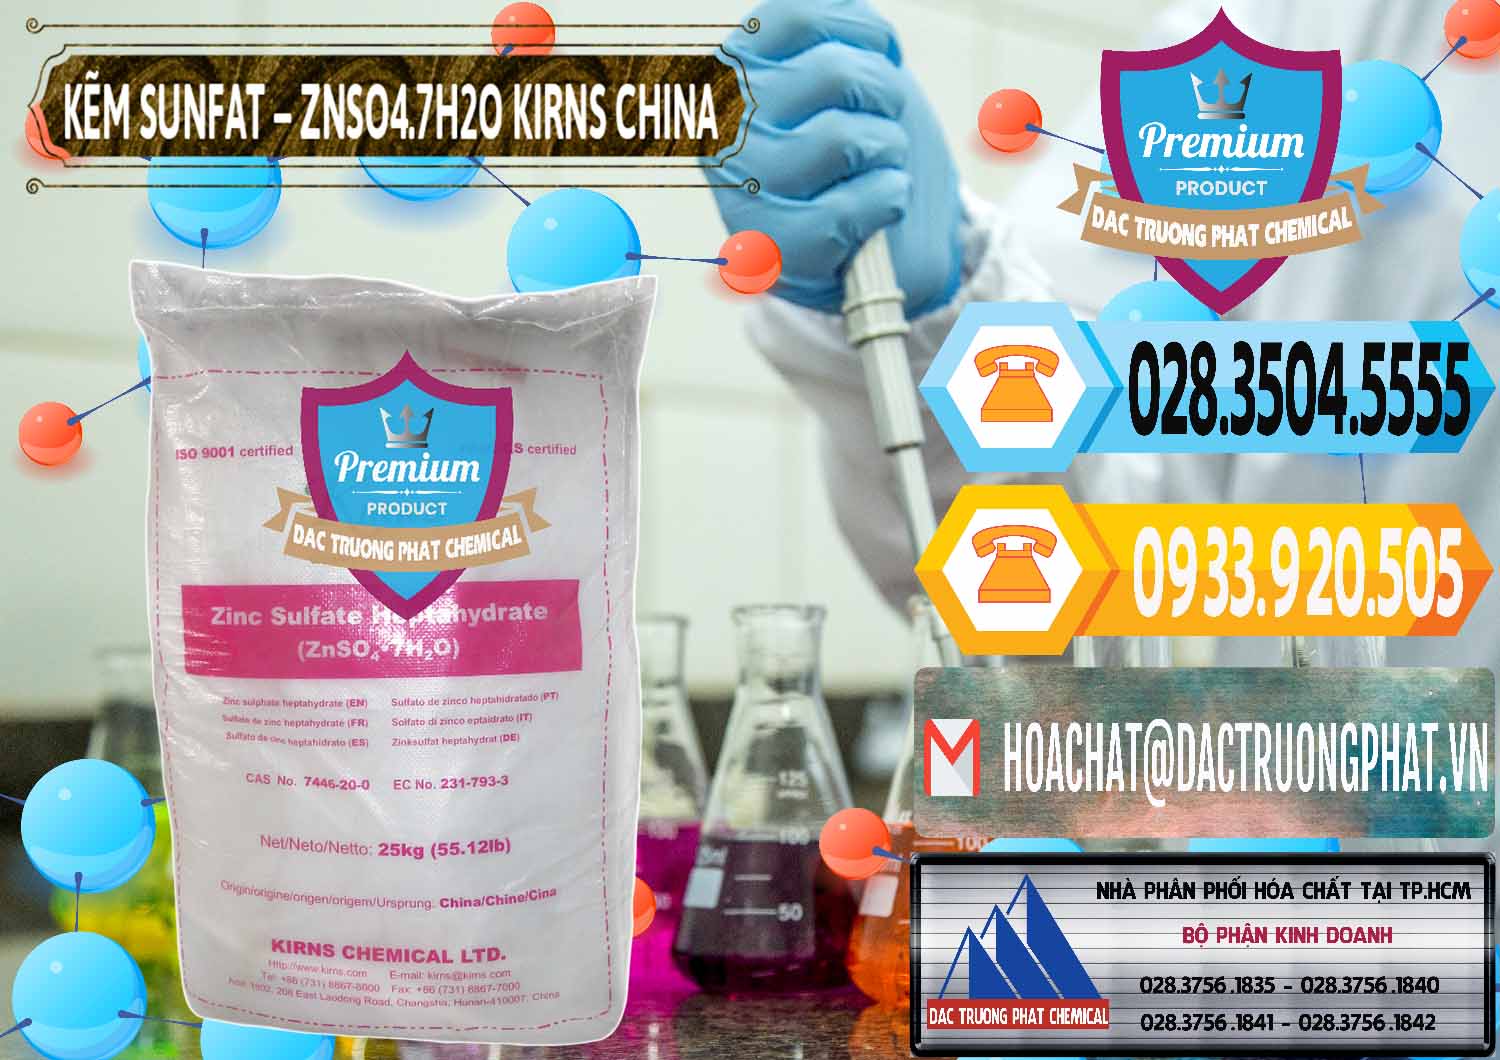 Công ty chuyên cung cấp _ bán Kẽm Sunfat – ZNSO4.7H2O Kirns Trung Quốc China - 0089 - Cty chuyên cung cấp và kinh doanh hóa chất tại TP.HCM - hoachattayrua.net